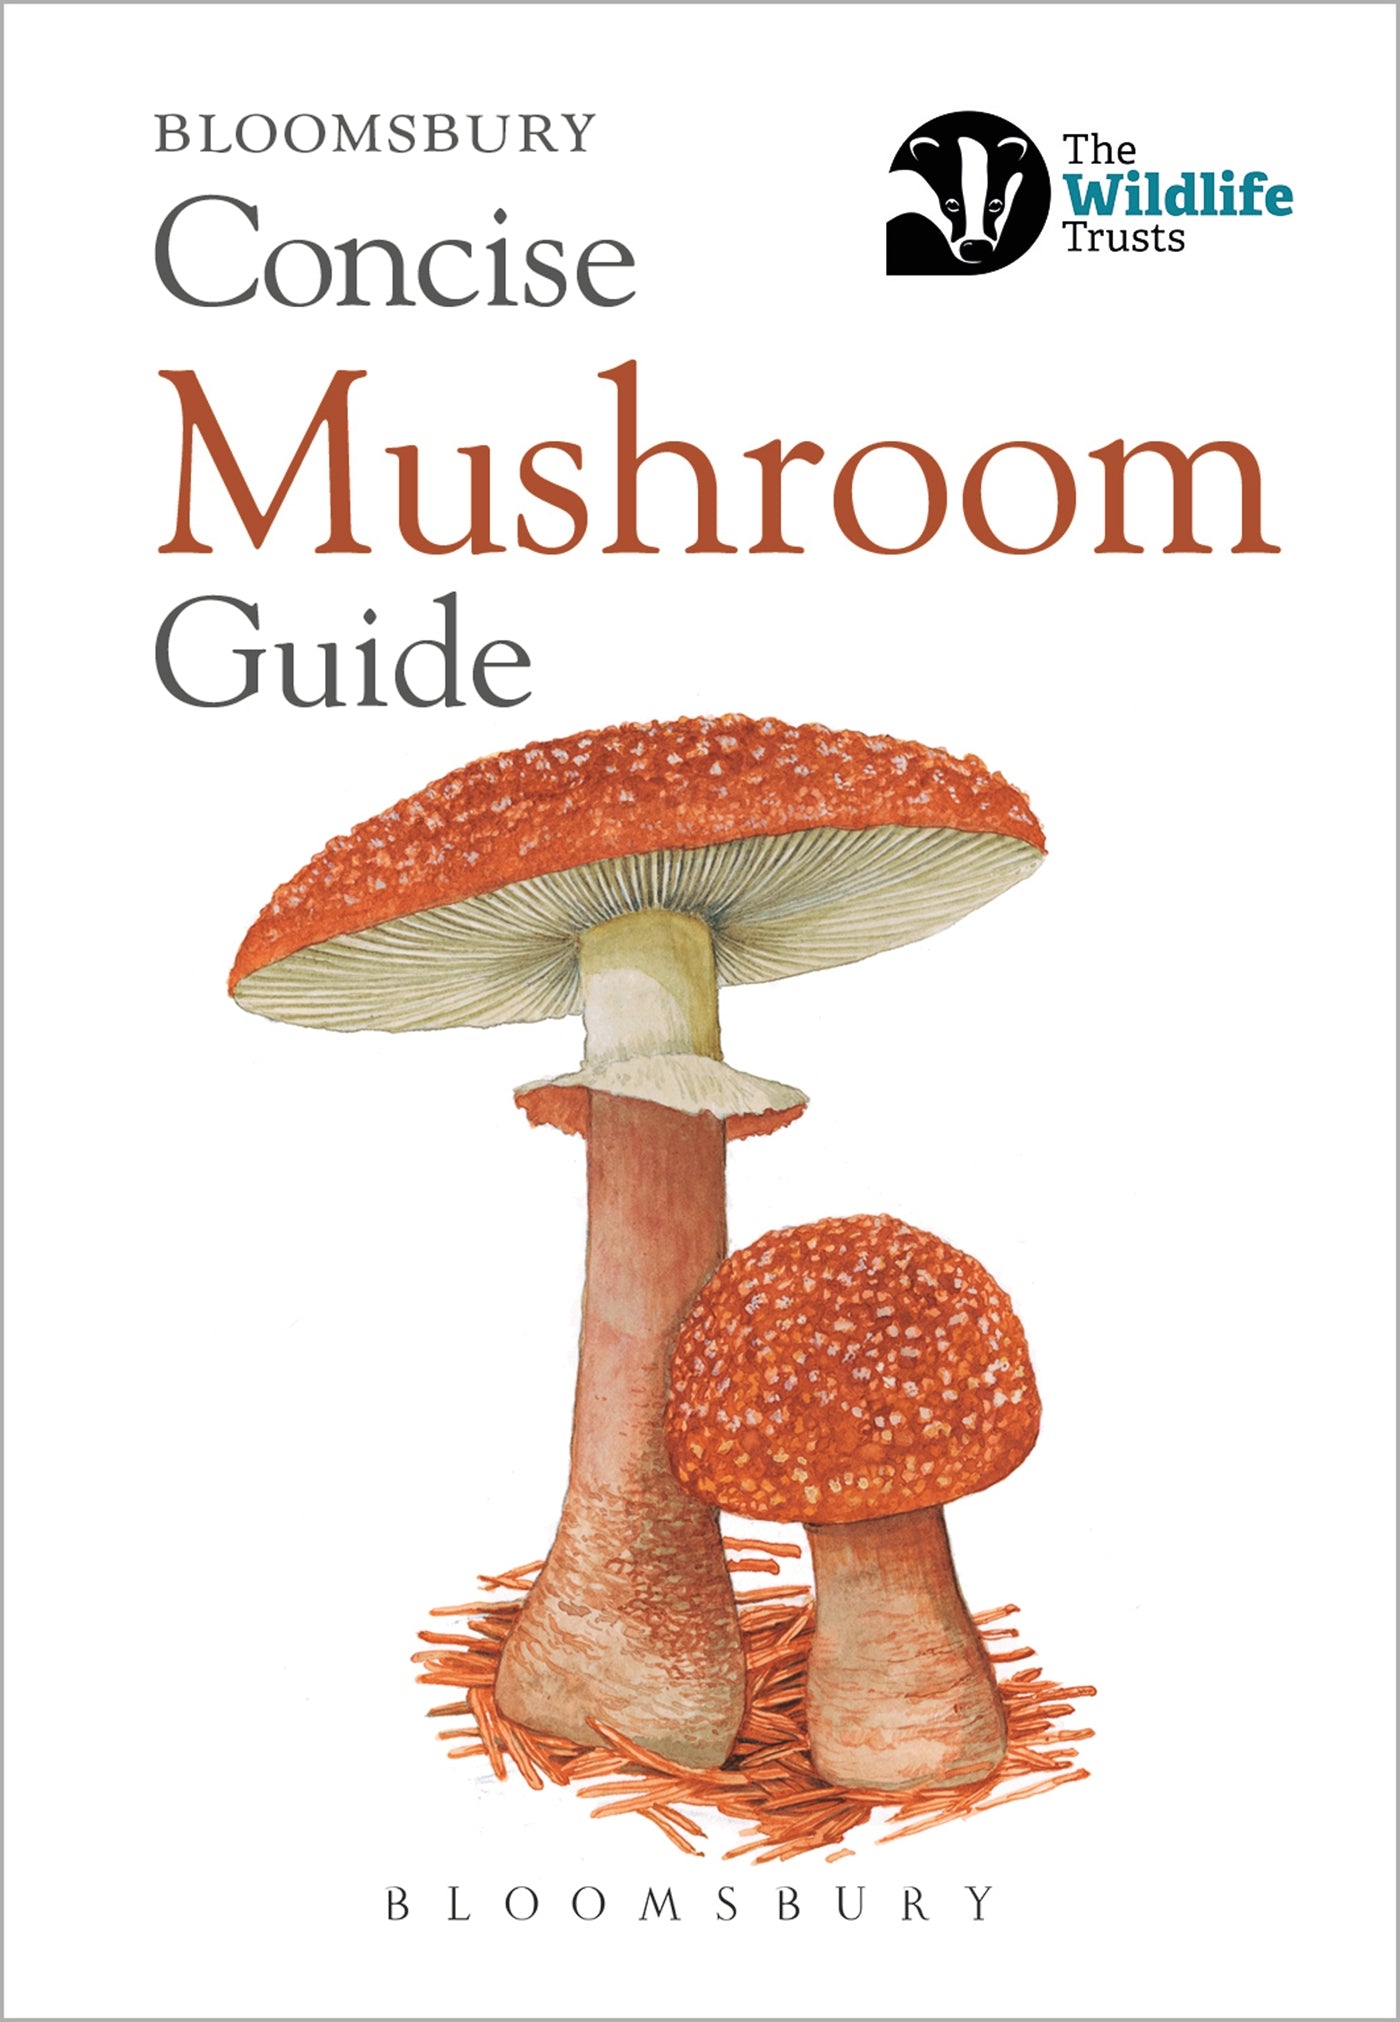 Bloomsbury concise guide - mushroom